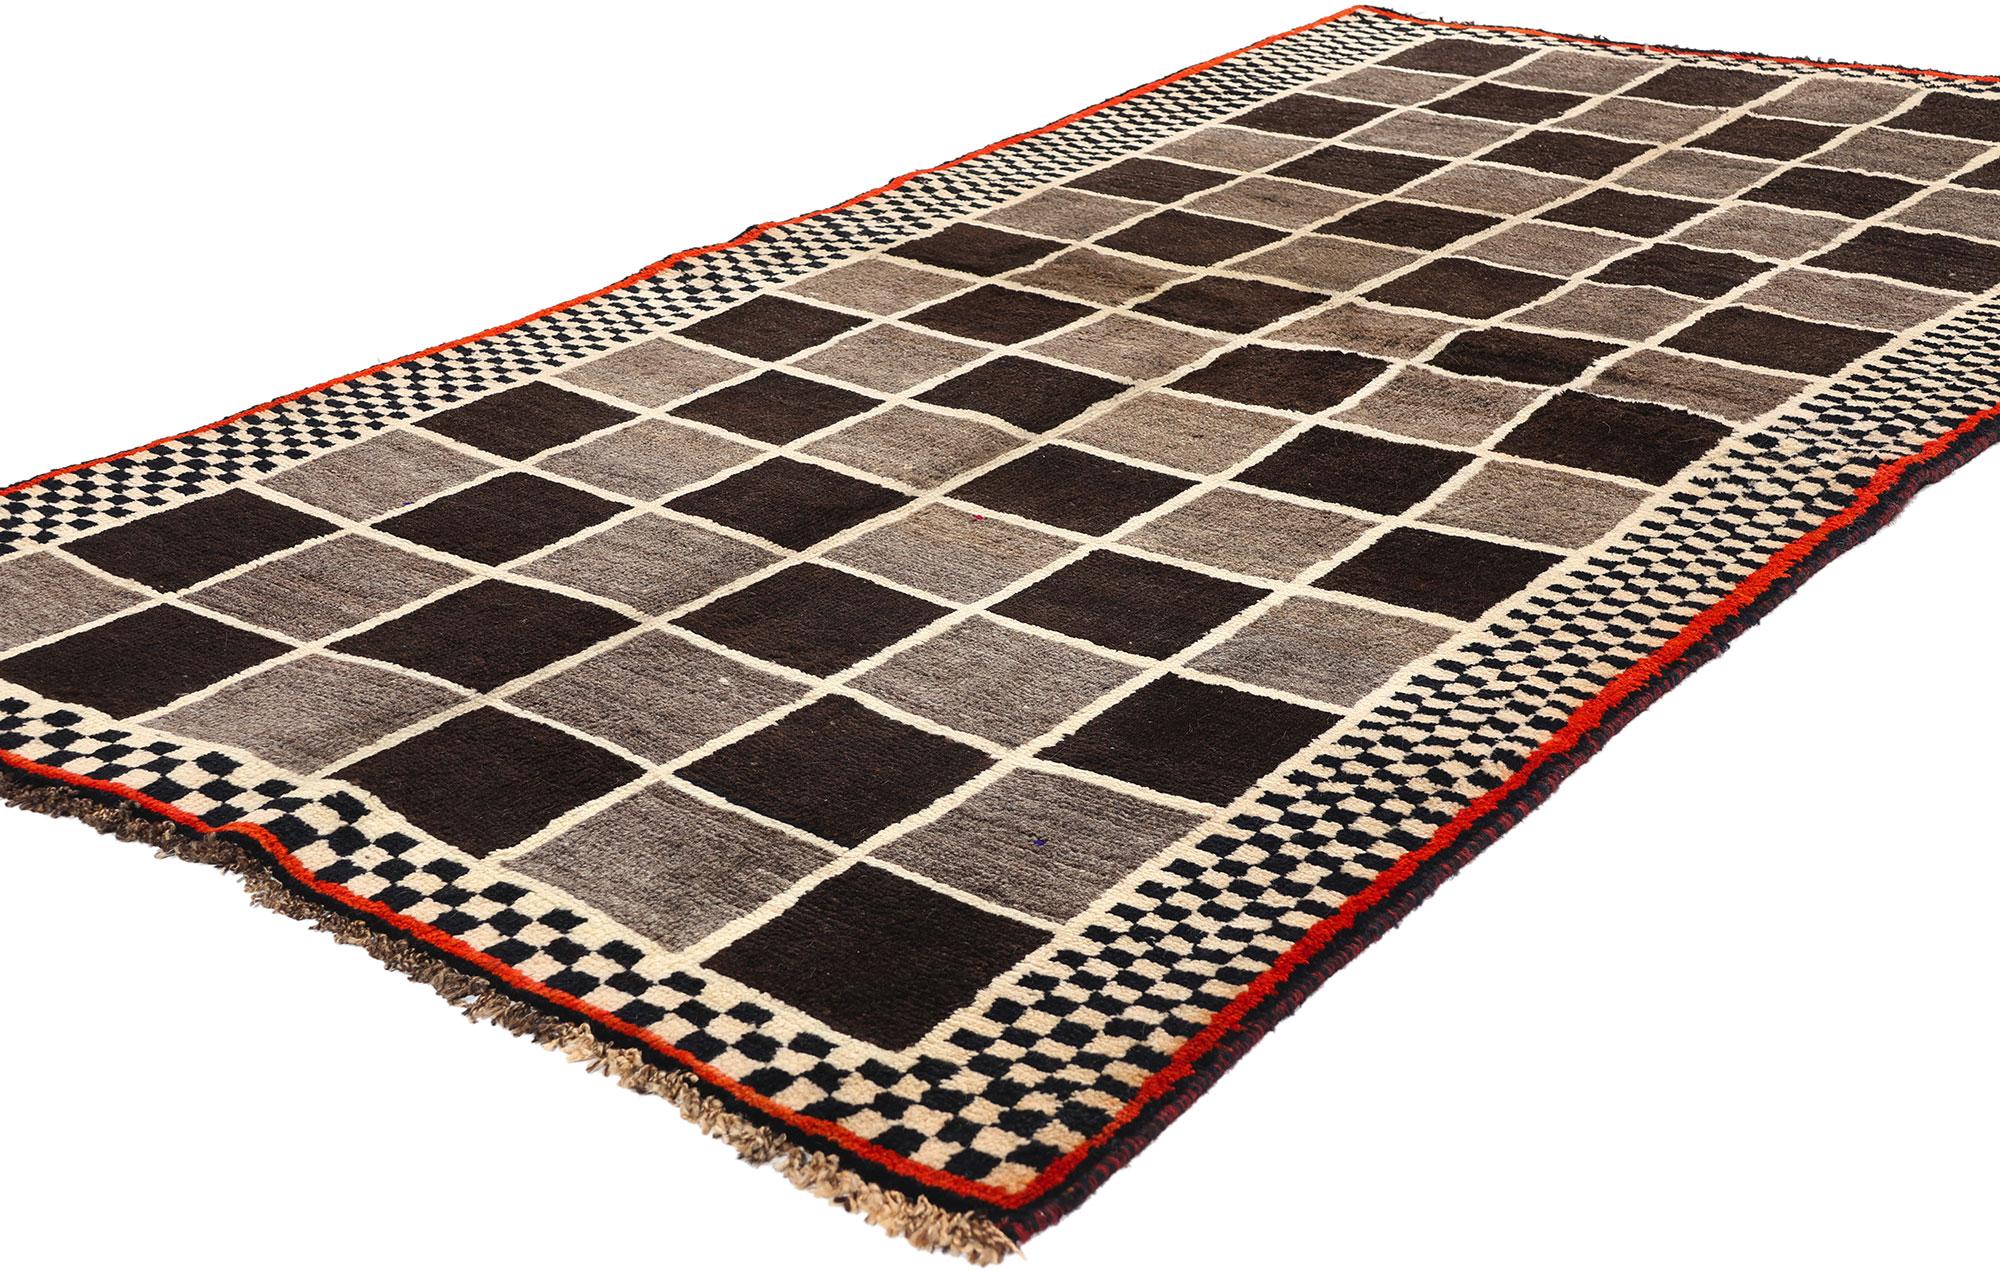 61071 Vintage Persischer Gabbeh Teppich mit Schachbrettmuster, 03'10 x 07'03. Neutrale erdfarbene persische Gabbeh-Teppiche repräsentieren einen traditionellen Stil, der für seine Schlichtheit, seinen dichten Flor und seine erdige Farbpalette